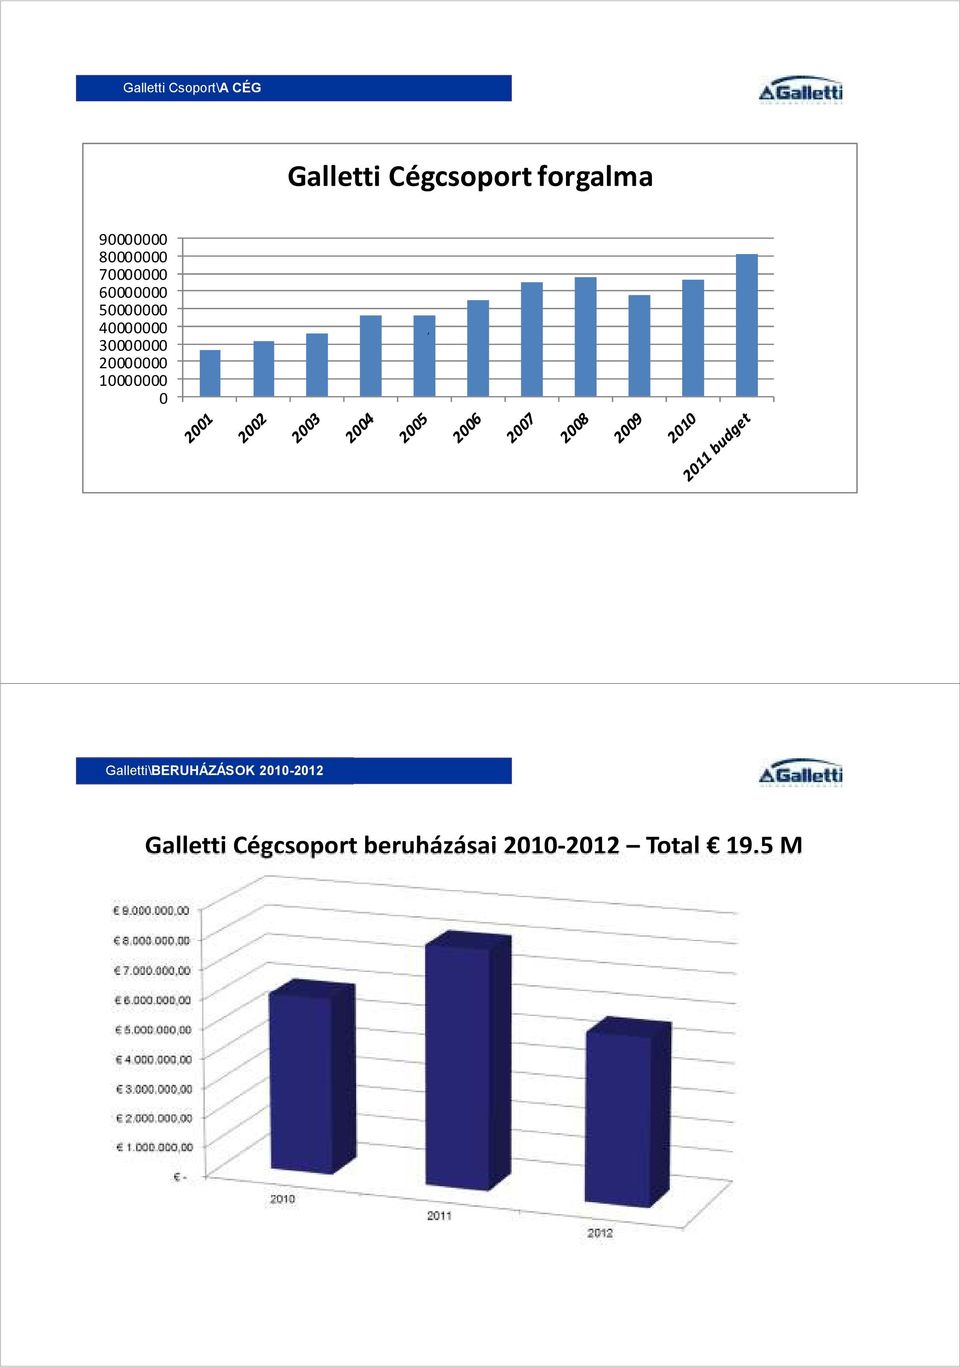 10000000 0, Galletti\BERUHÁZÁSOK IL GRUPPO GALLETTI 2010-2012